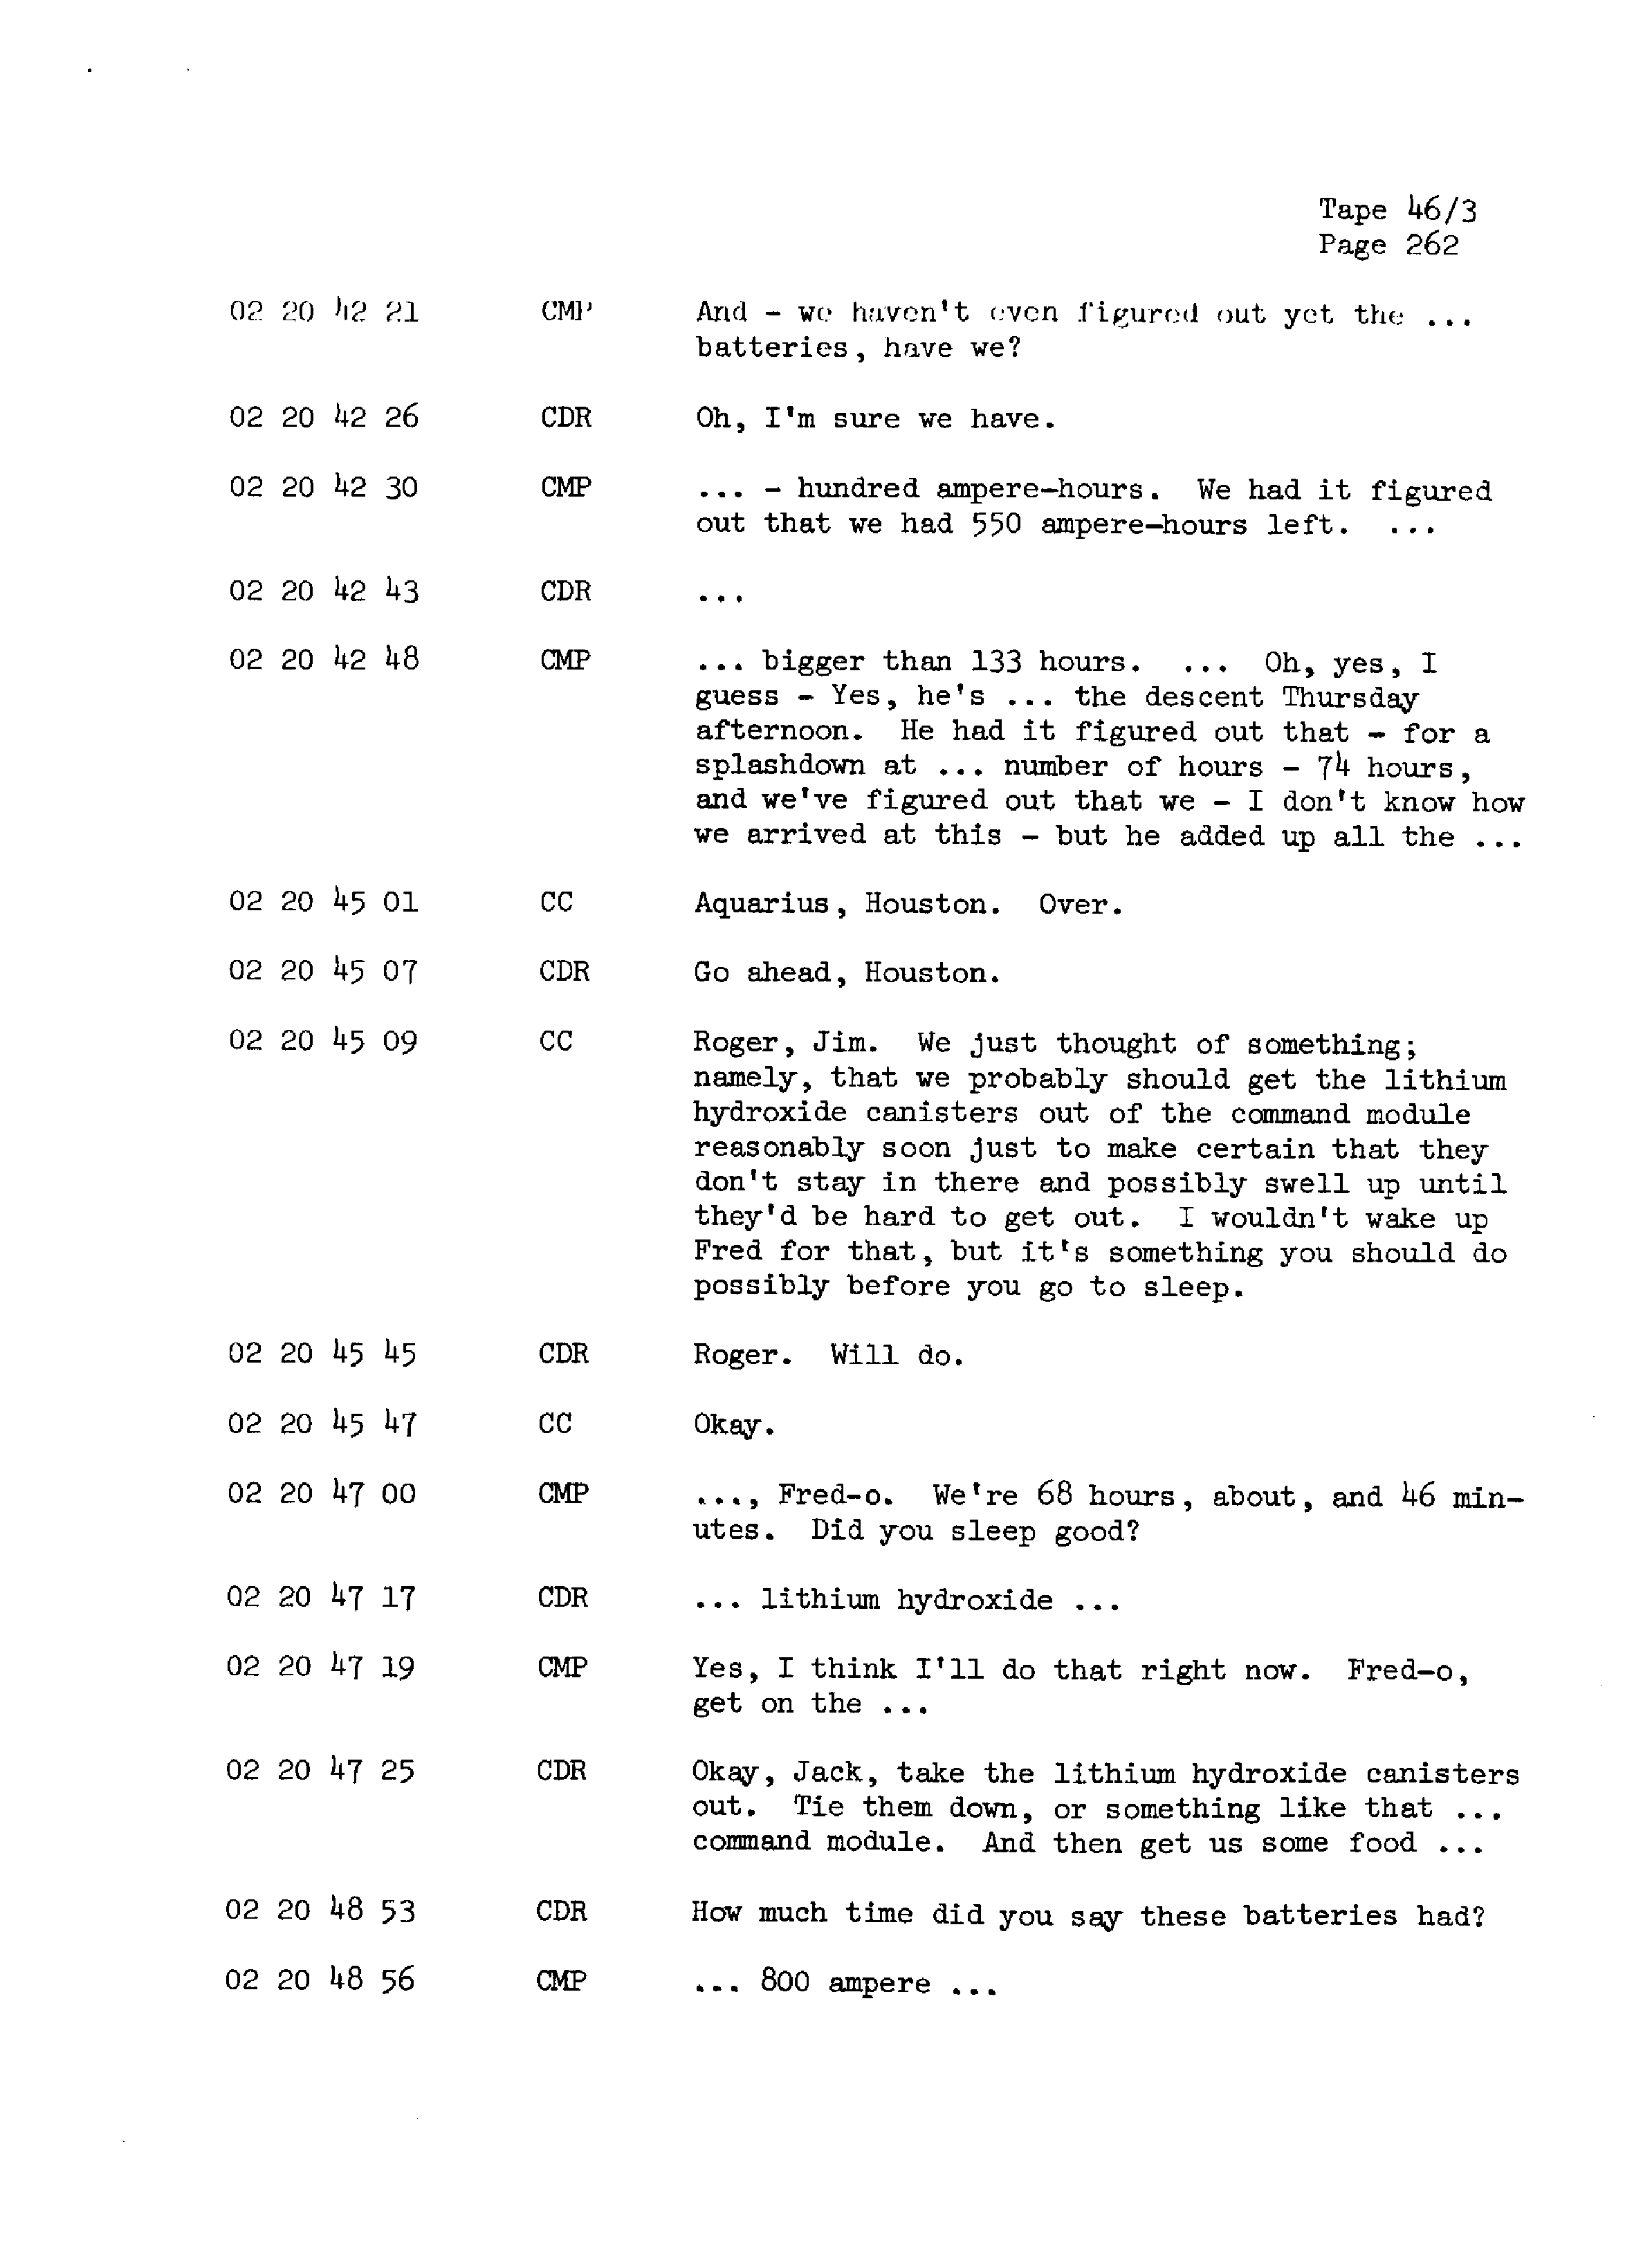 Page 269 of Apollo 13’s original transcript